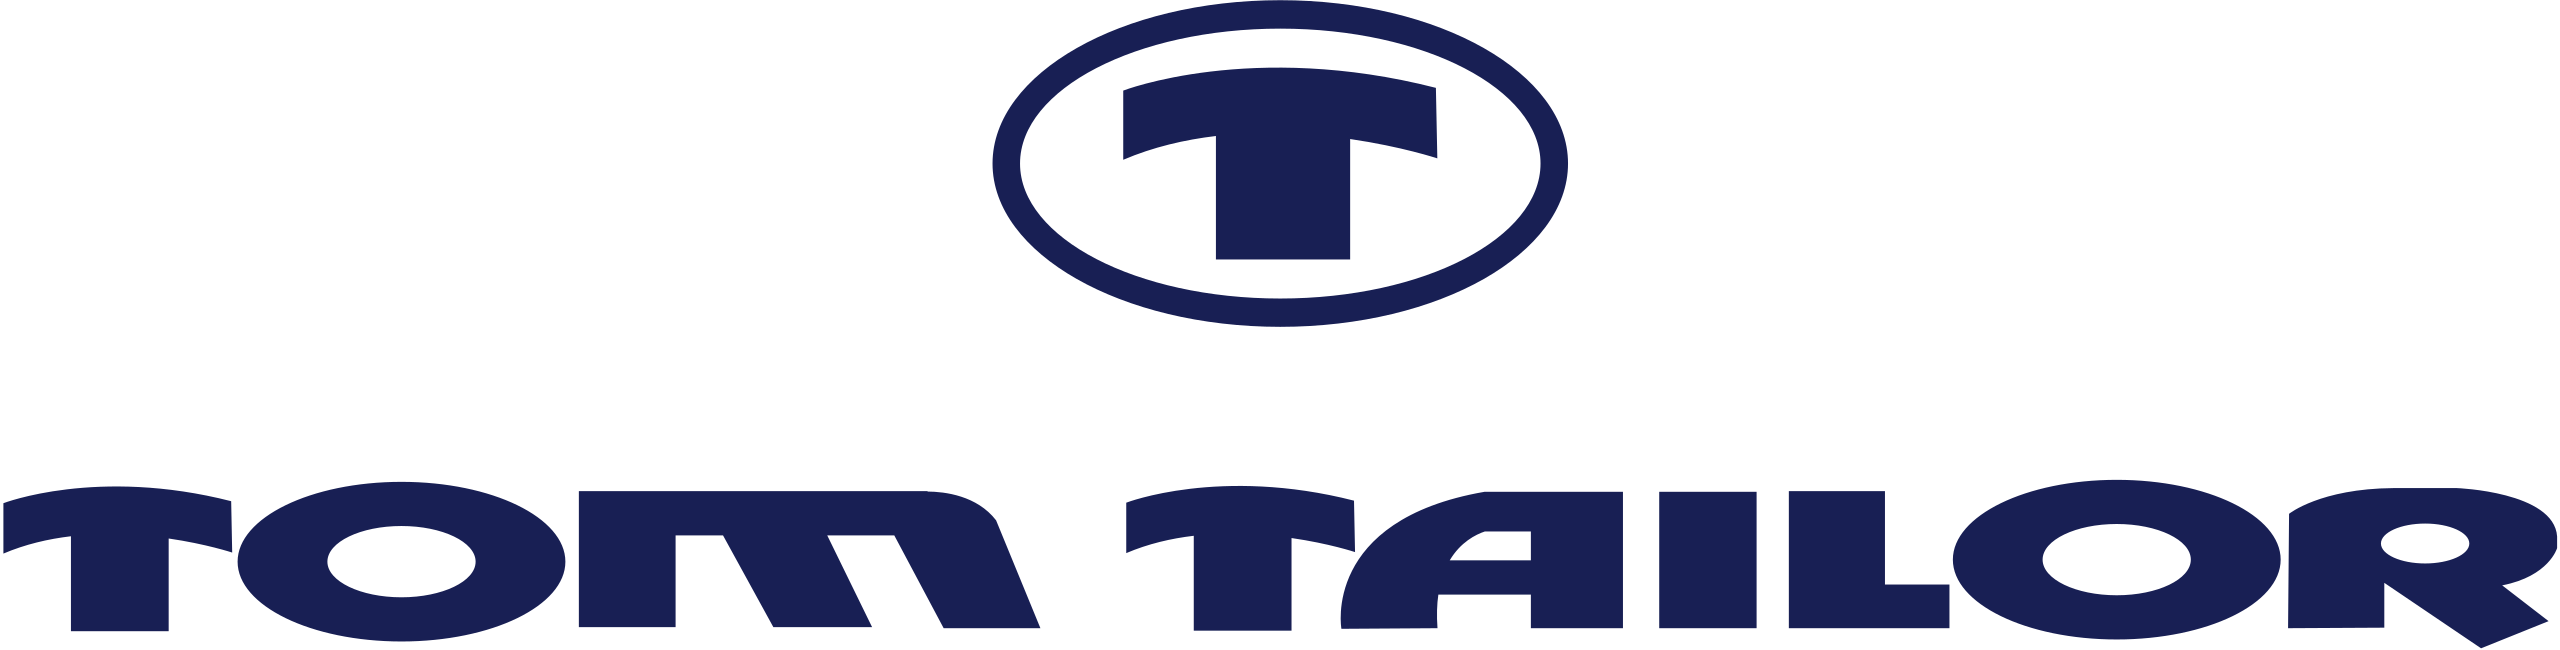 tom_tailor_logo